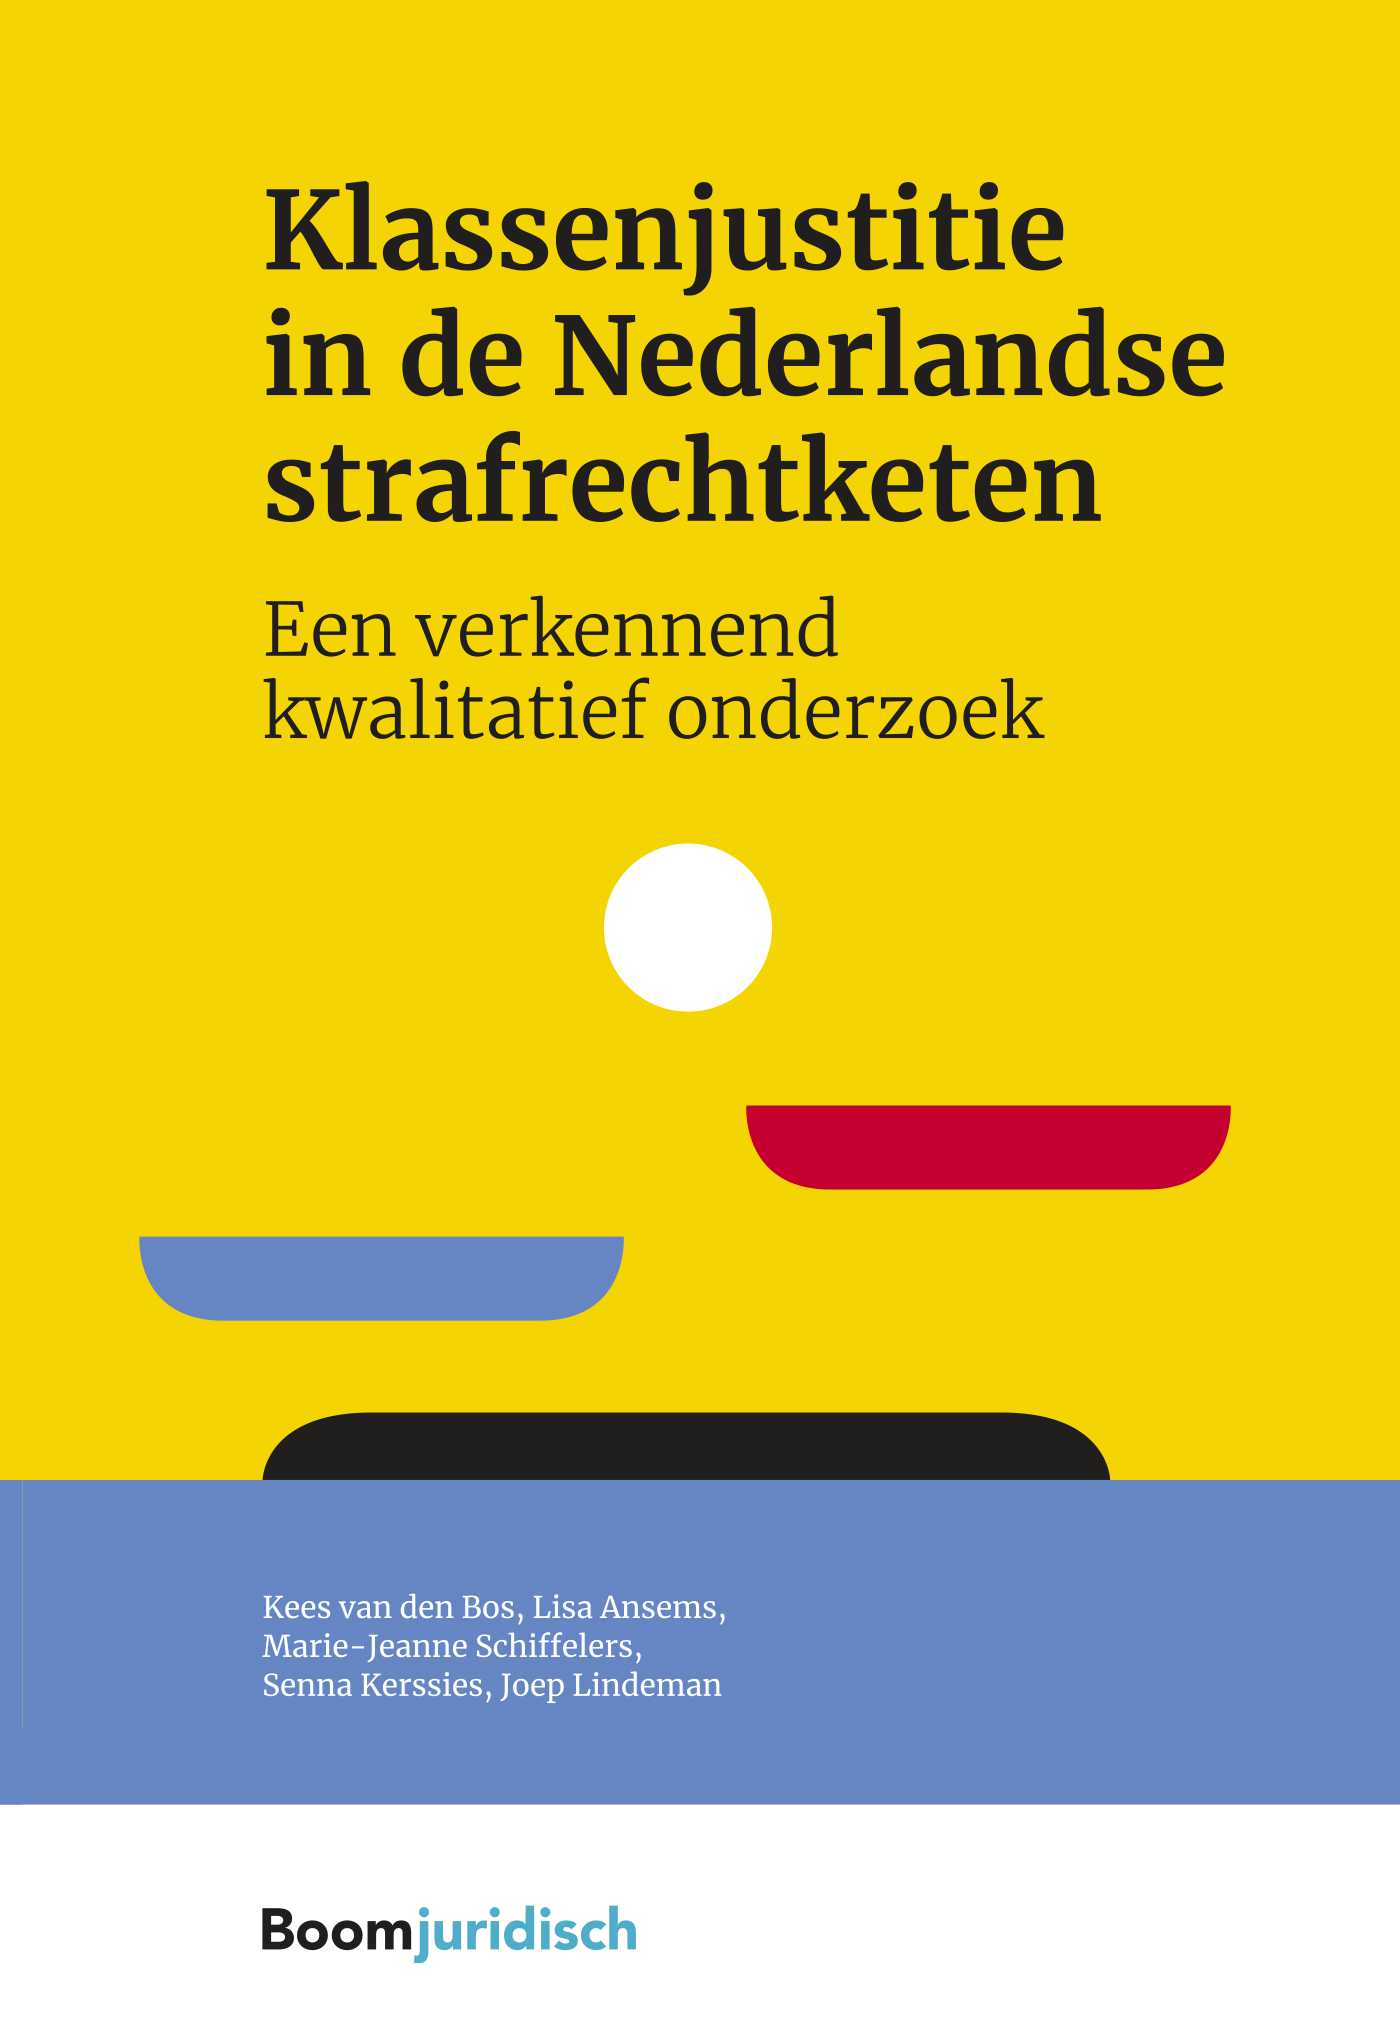 Klassenjustitie in de Nederlandse strafrechtketen